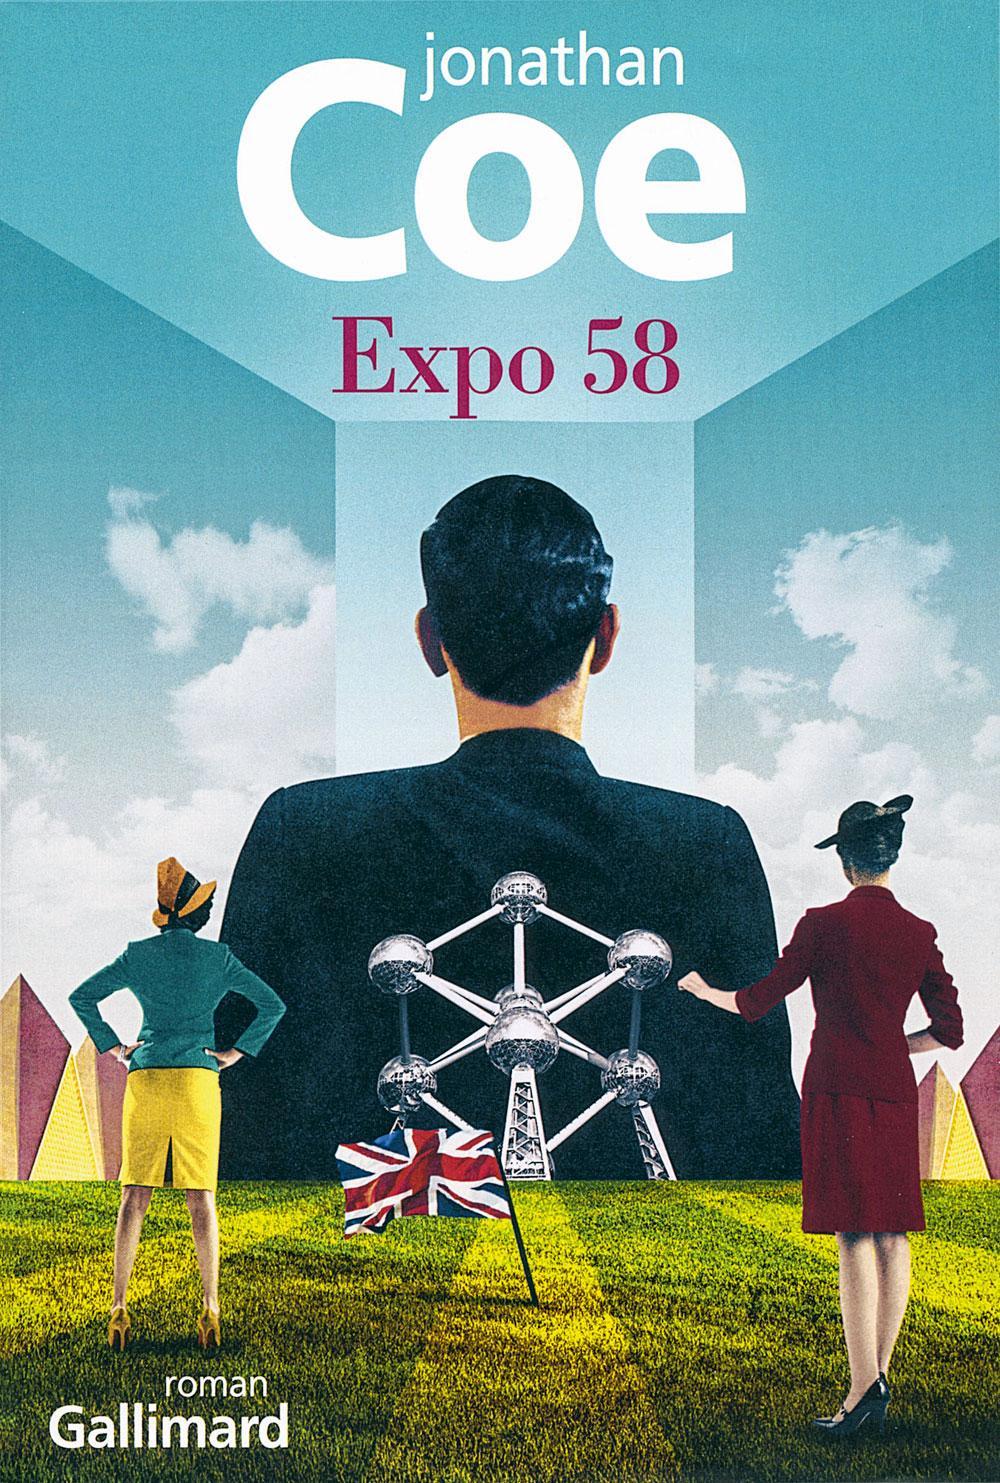 Dans Expo 58, roman de Jonathan Coe, fonctionnaires internationaux et agents secrets font bon ménage. La BD Sourire 58 nous plonge au coeur d'intrigues entre services secrets. Et le héros du dernier polar d'Alain Berenboom joue les espions sur le chantier de l'Expo.